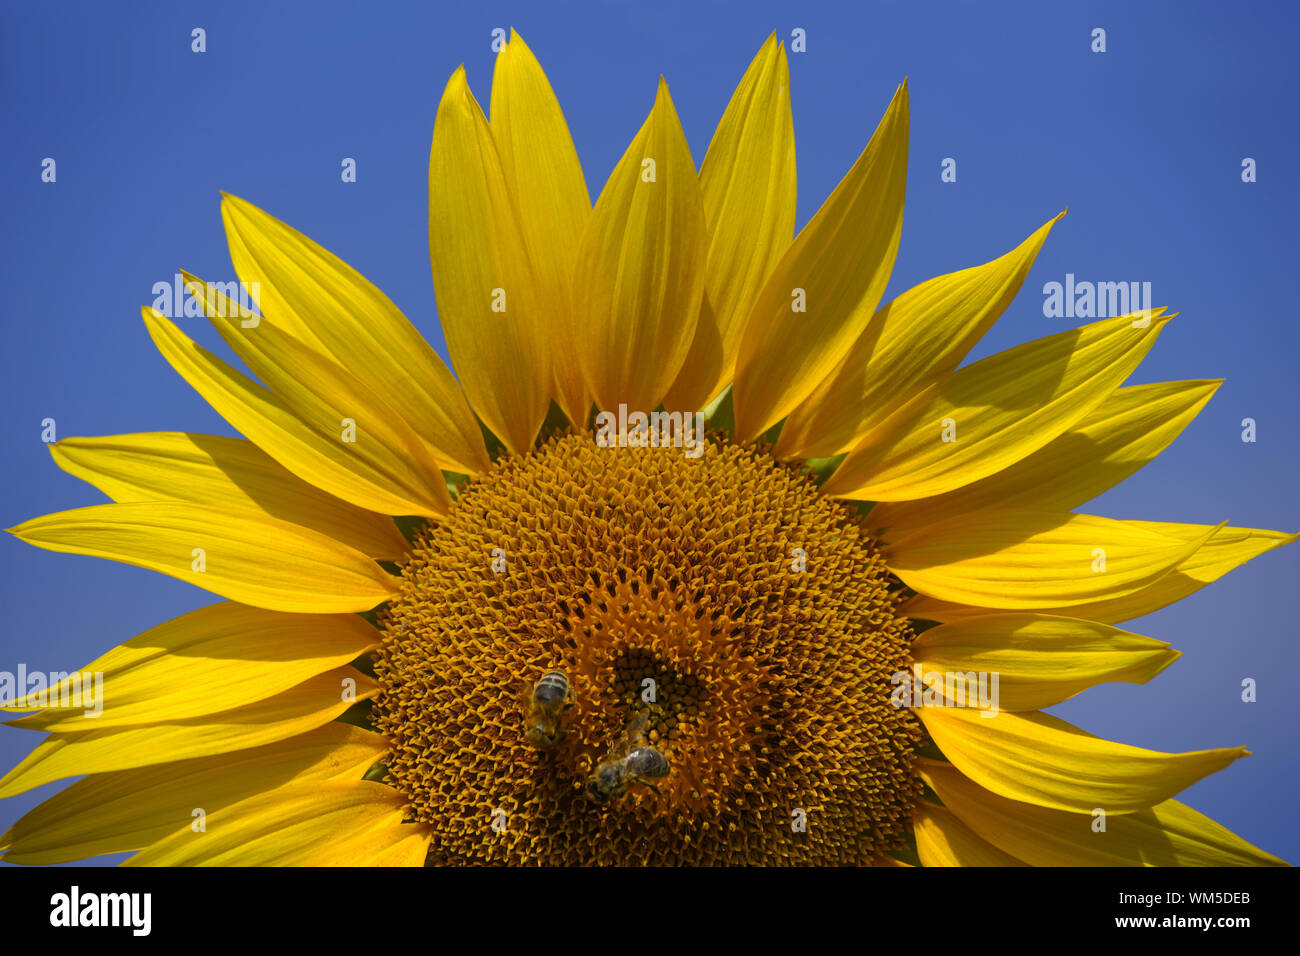 Bienen auf einer Sonnenblume Stockfoto